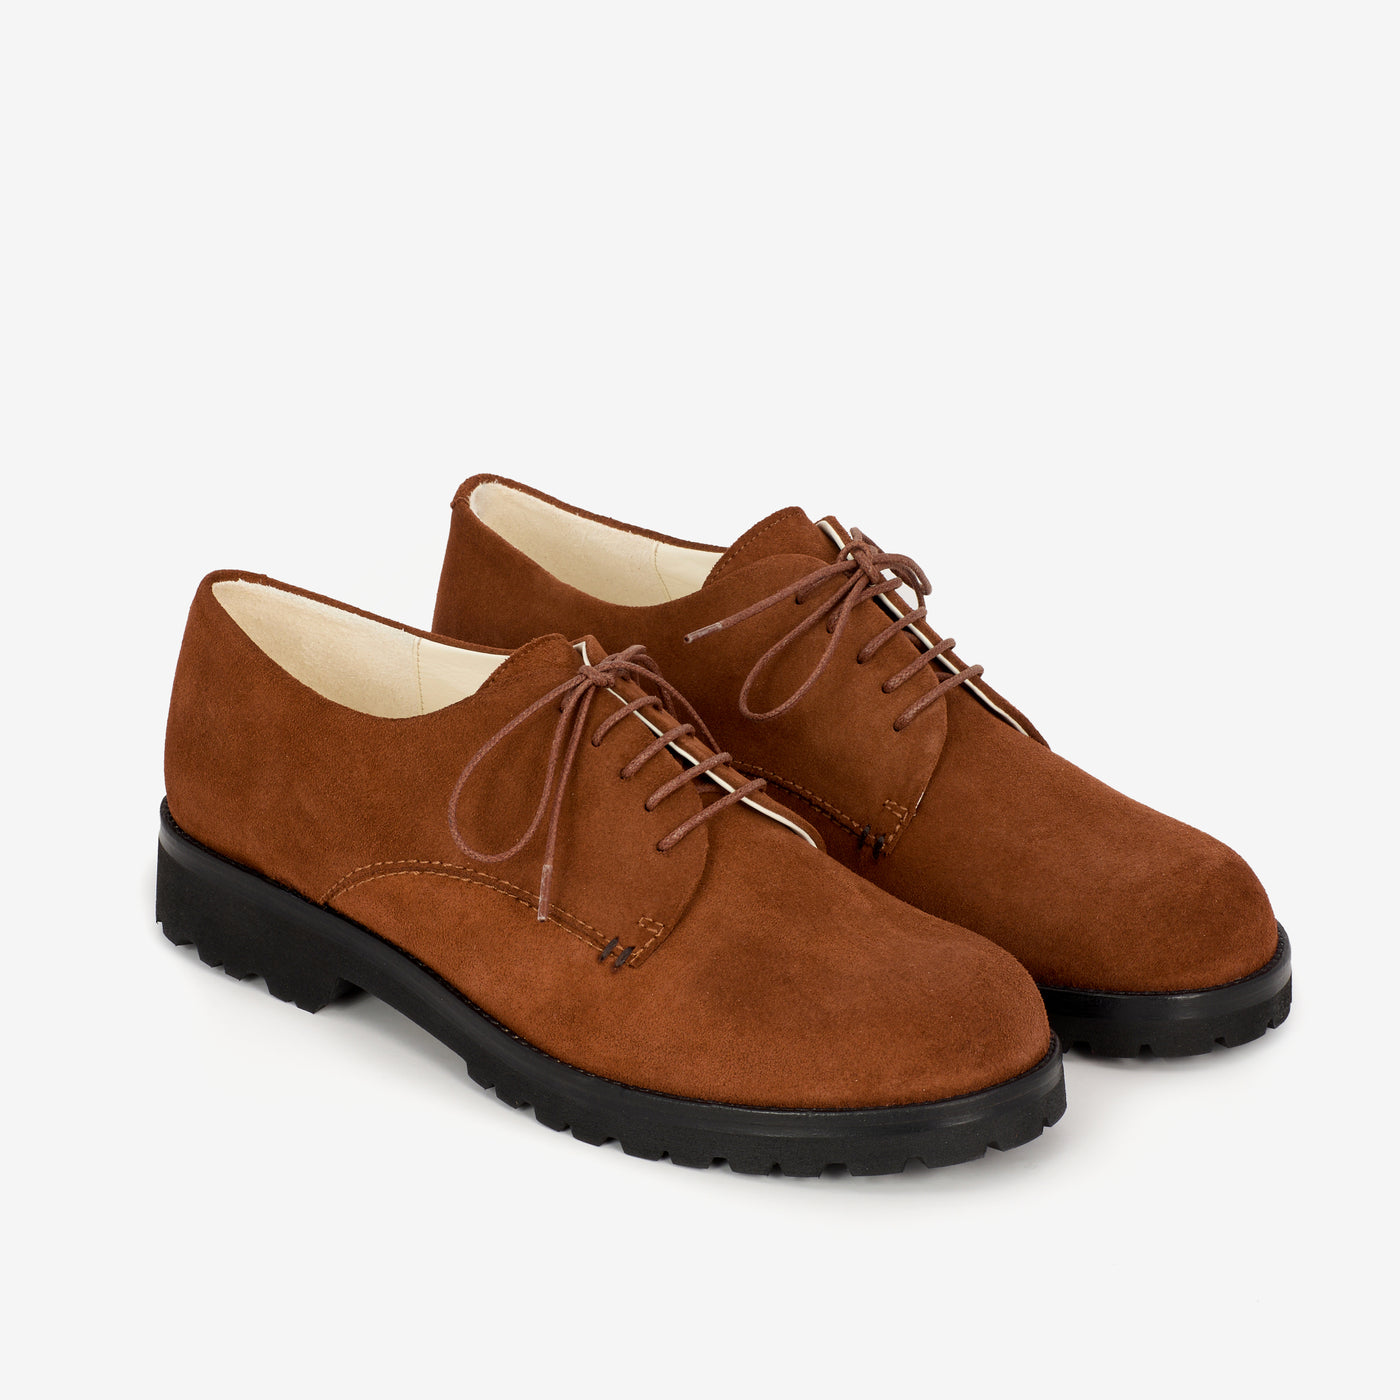 Mr. Derby shoe brown